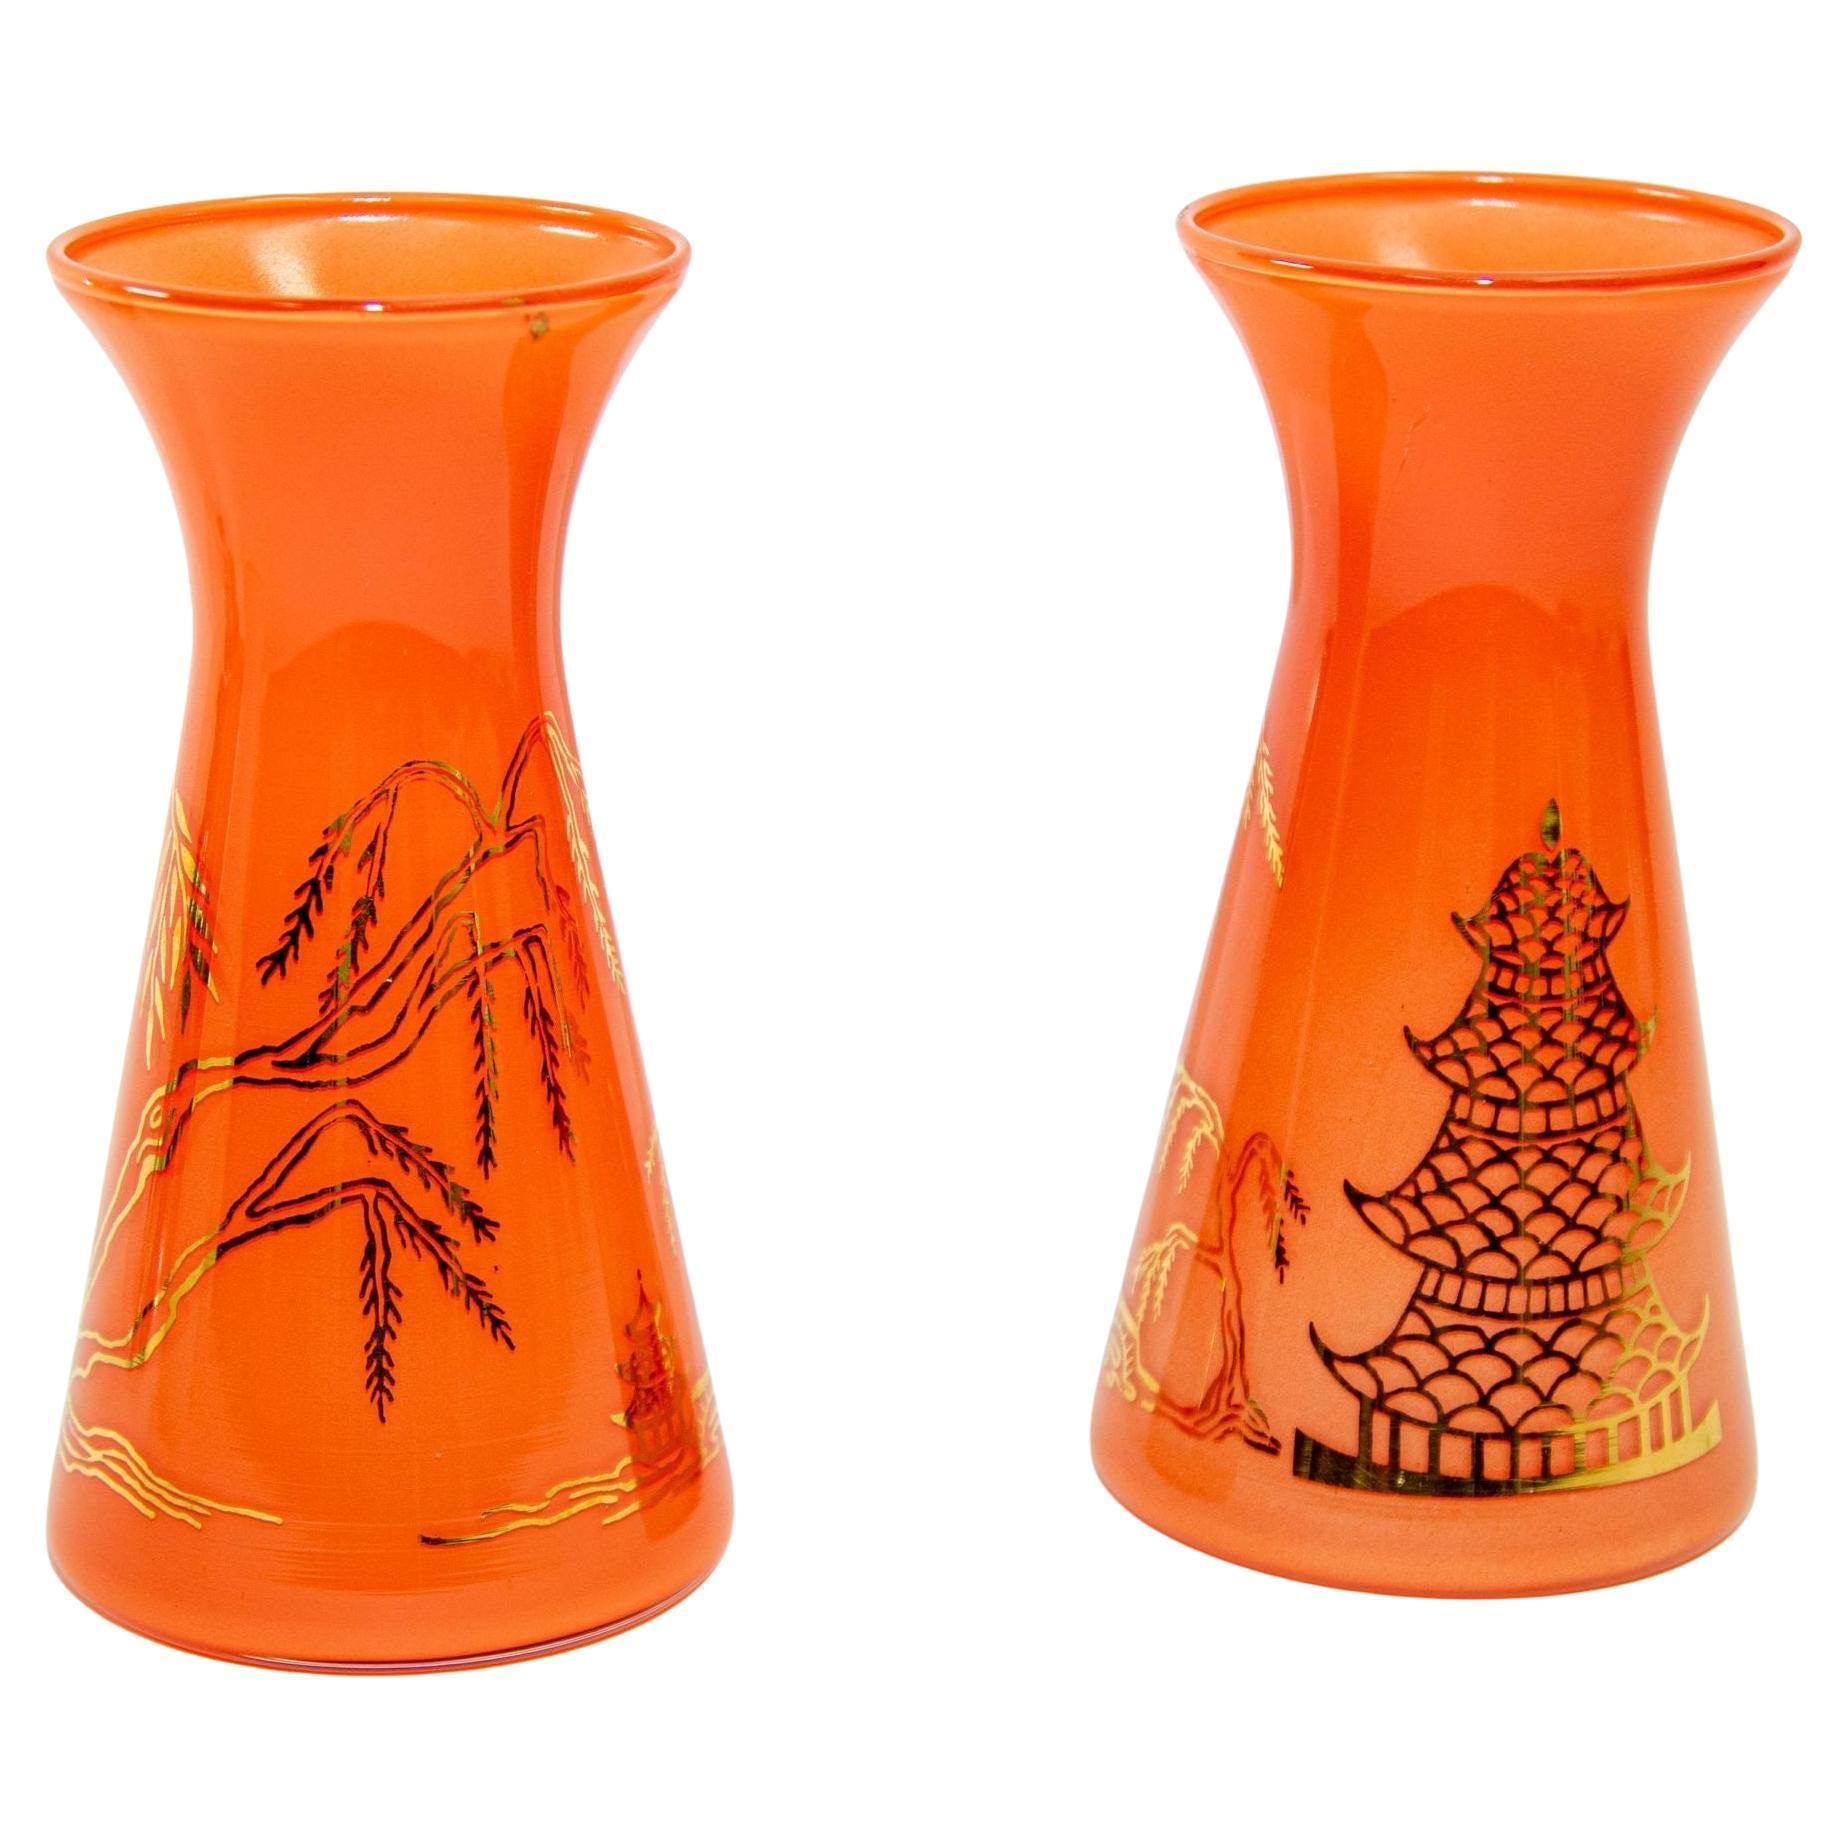 Vases en verre orange orientaux vintage avec motif de Pagodas asiatiques délavés dorés